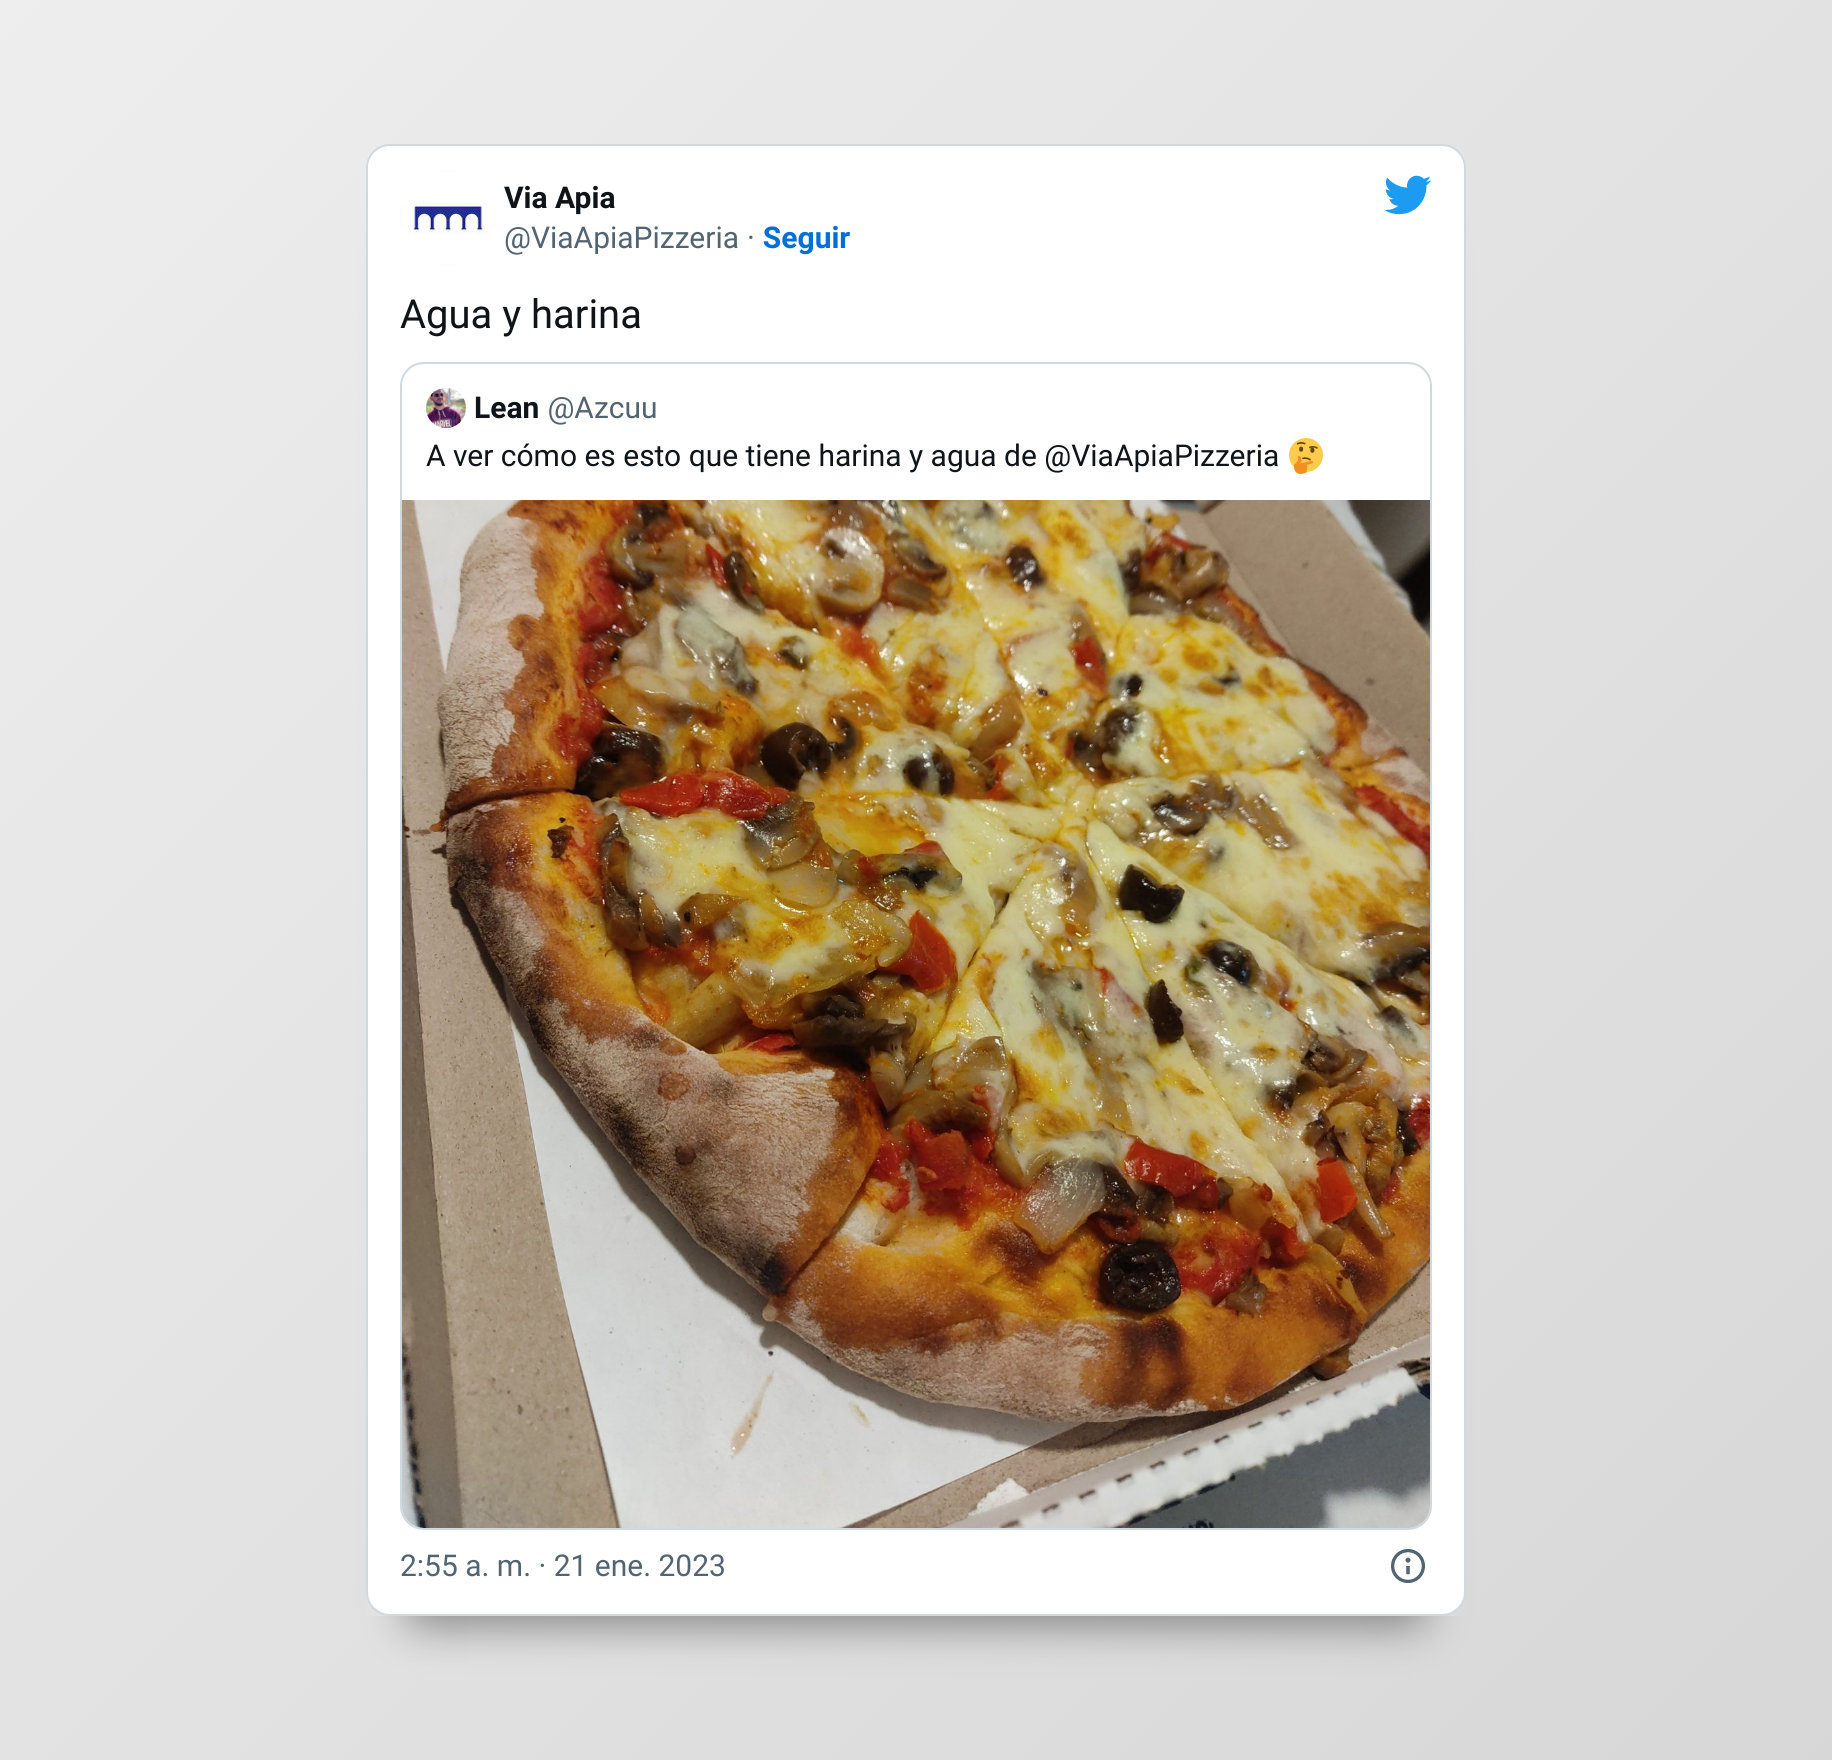 La pizzeria es reconocida en redes sociales ya que funciona todos los días, desde el año 1965. (Twitter @ViaApiaPizzeria)